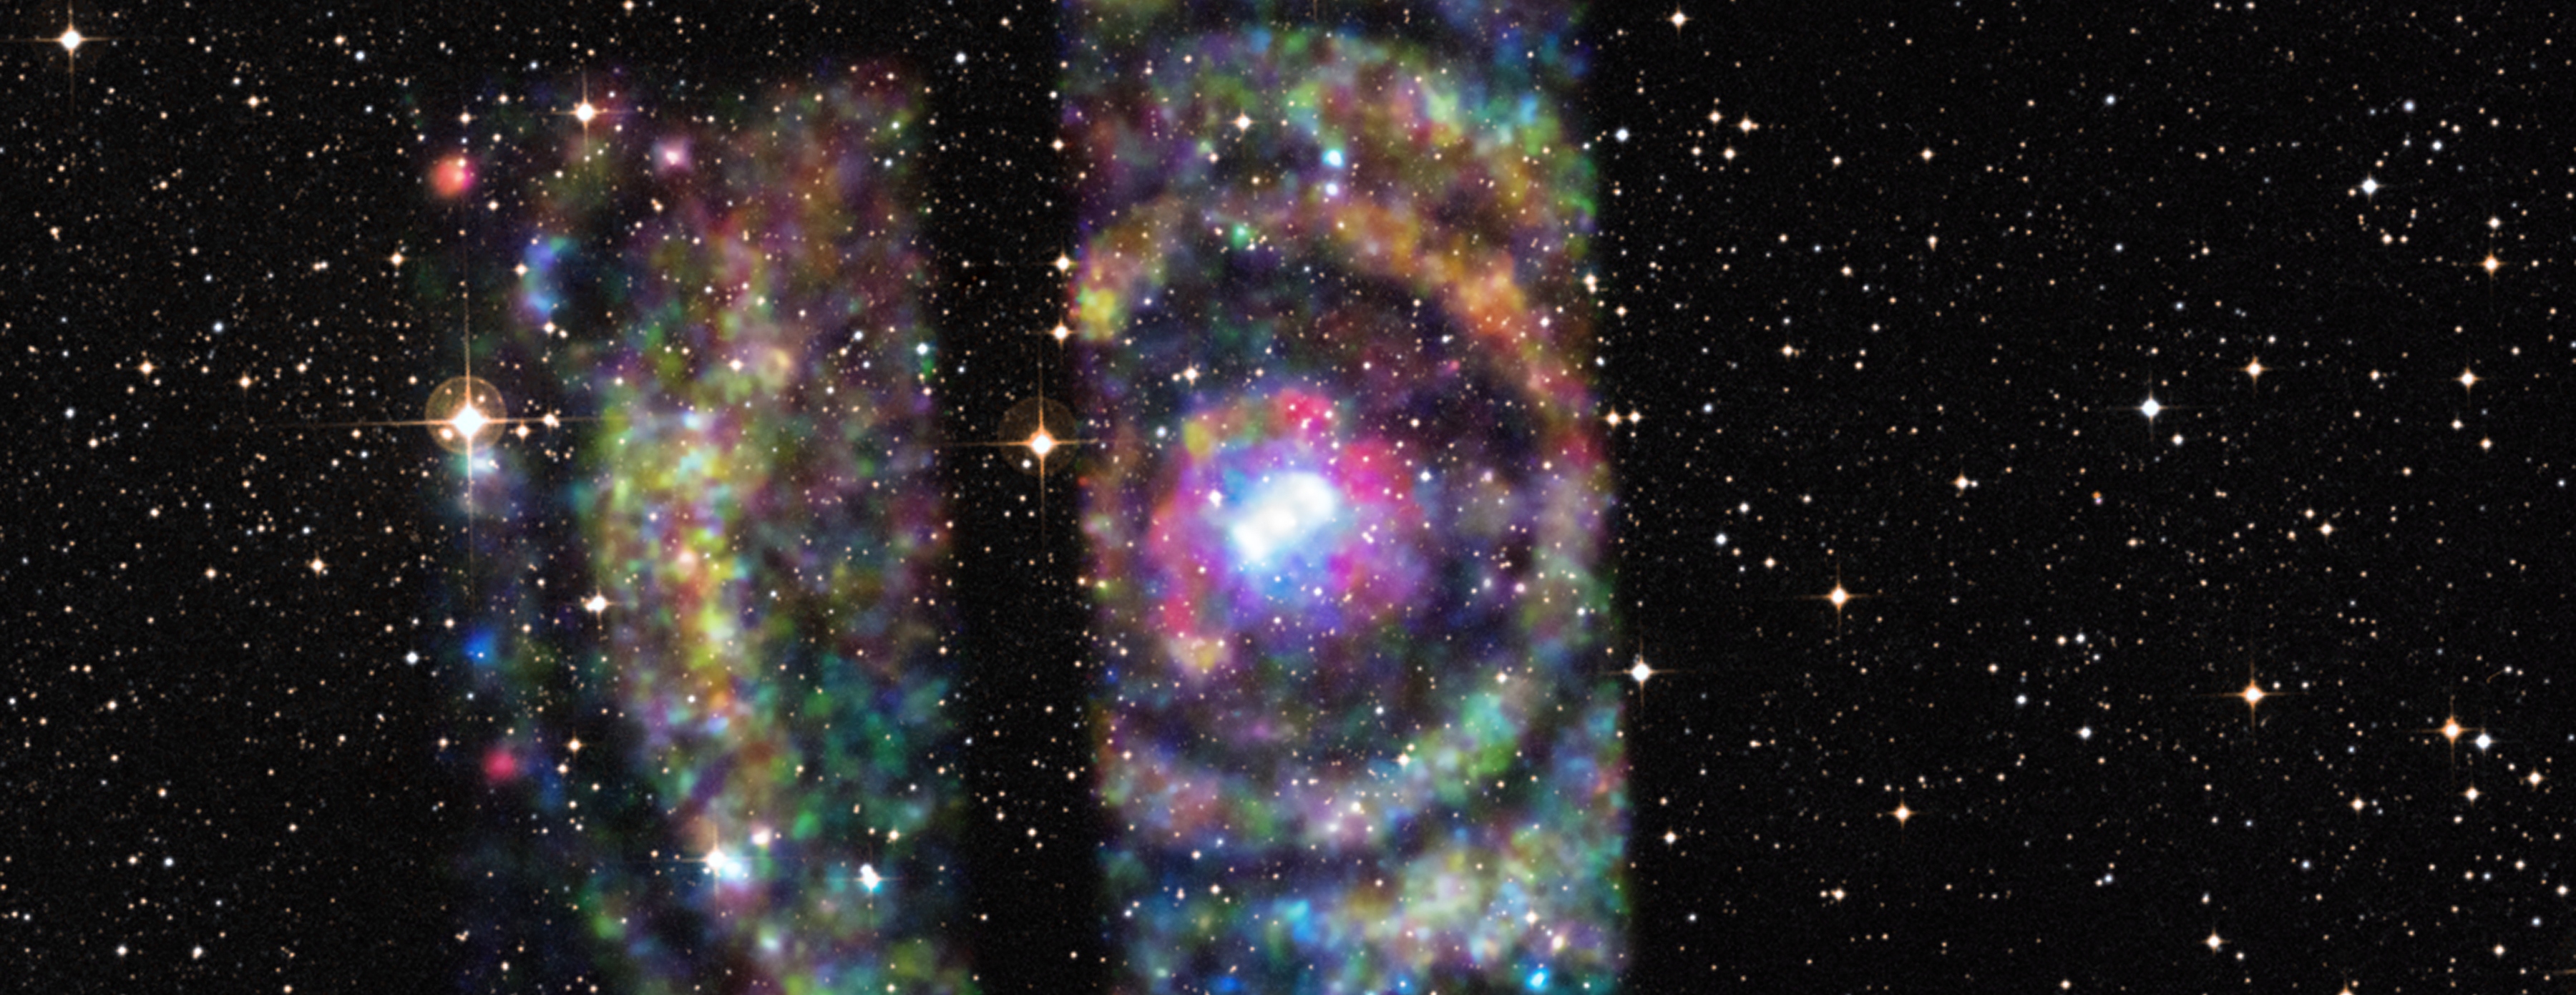 15-137-circinusx1-xraylightrings-neutronstar-chandra-20150624.jpg